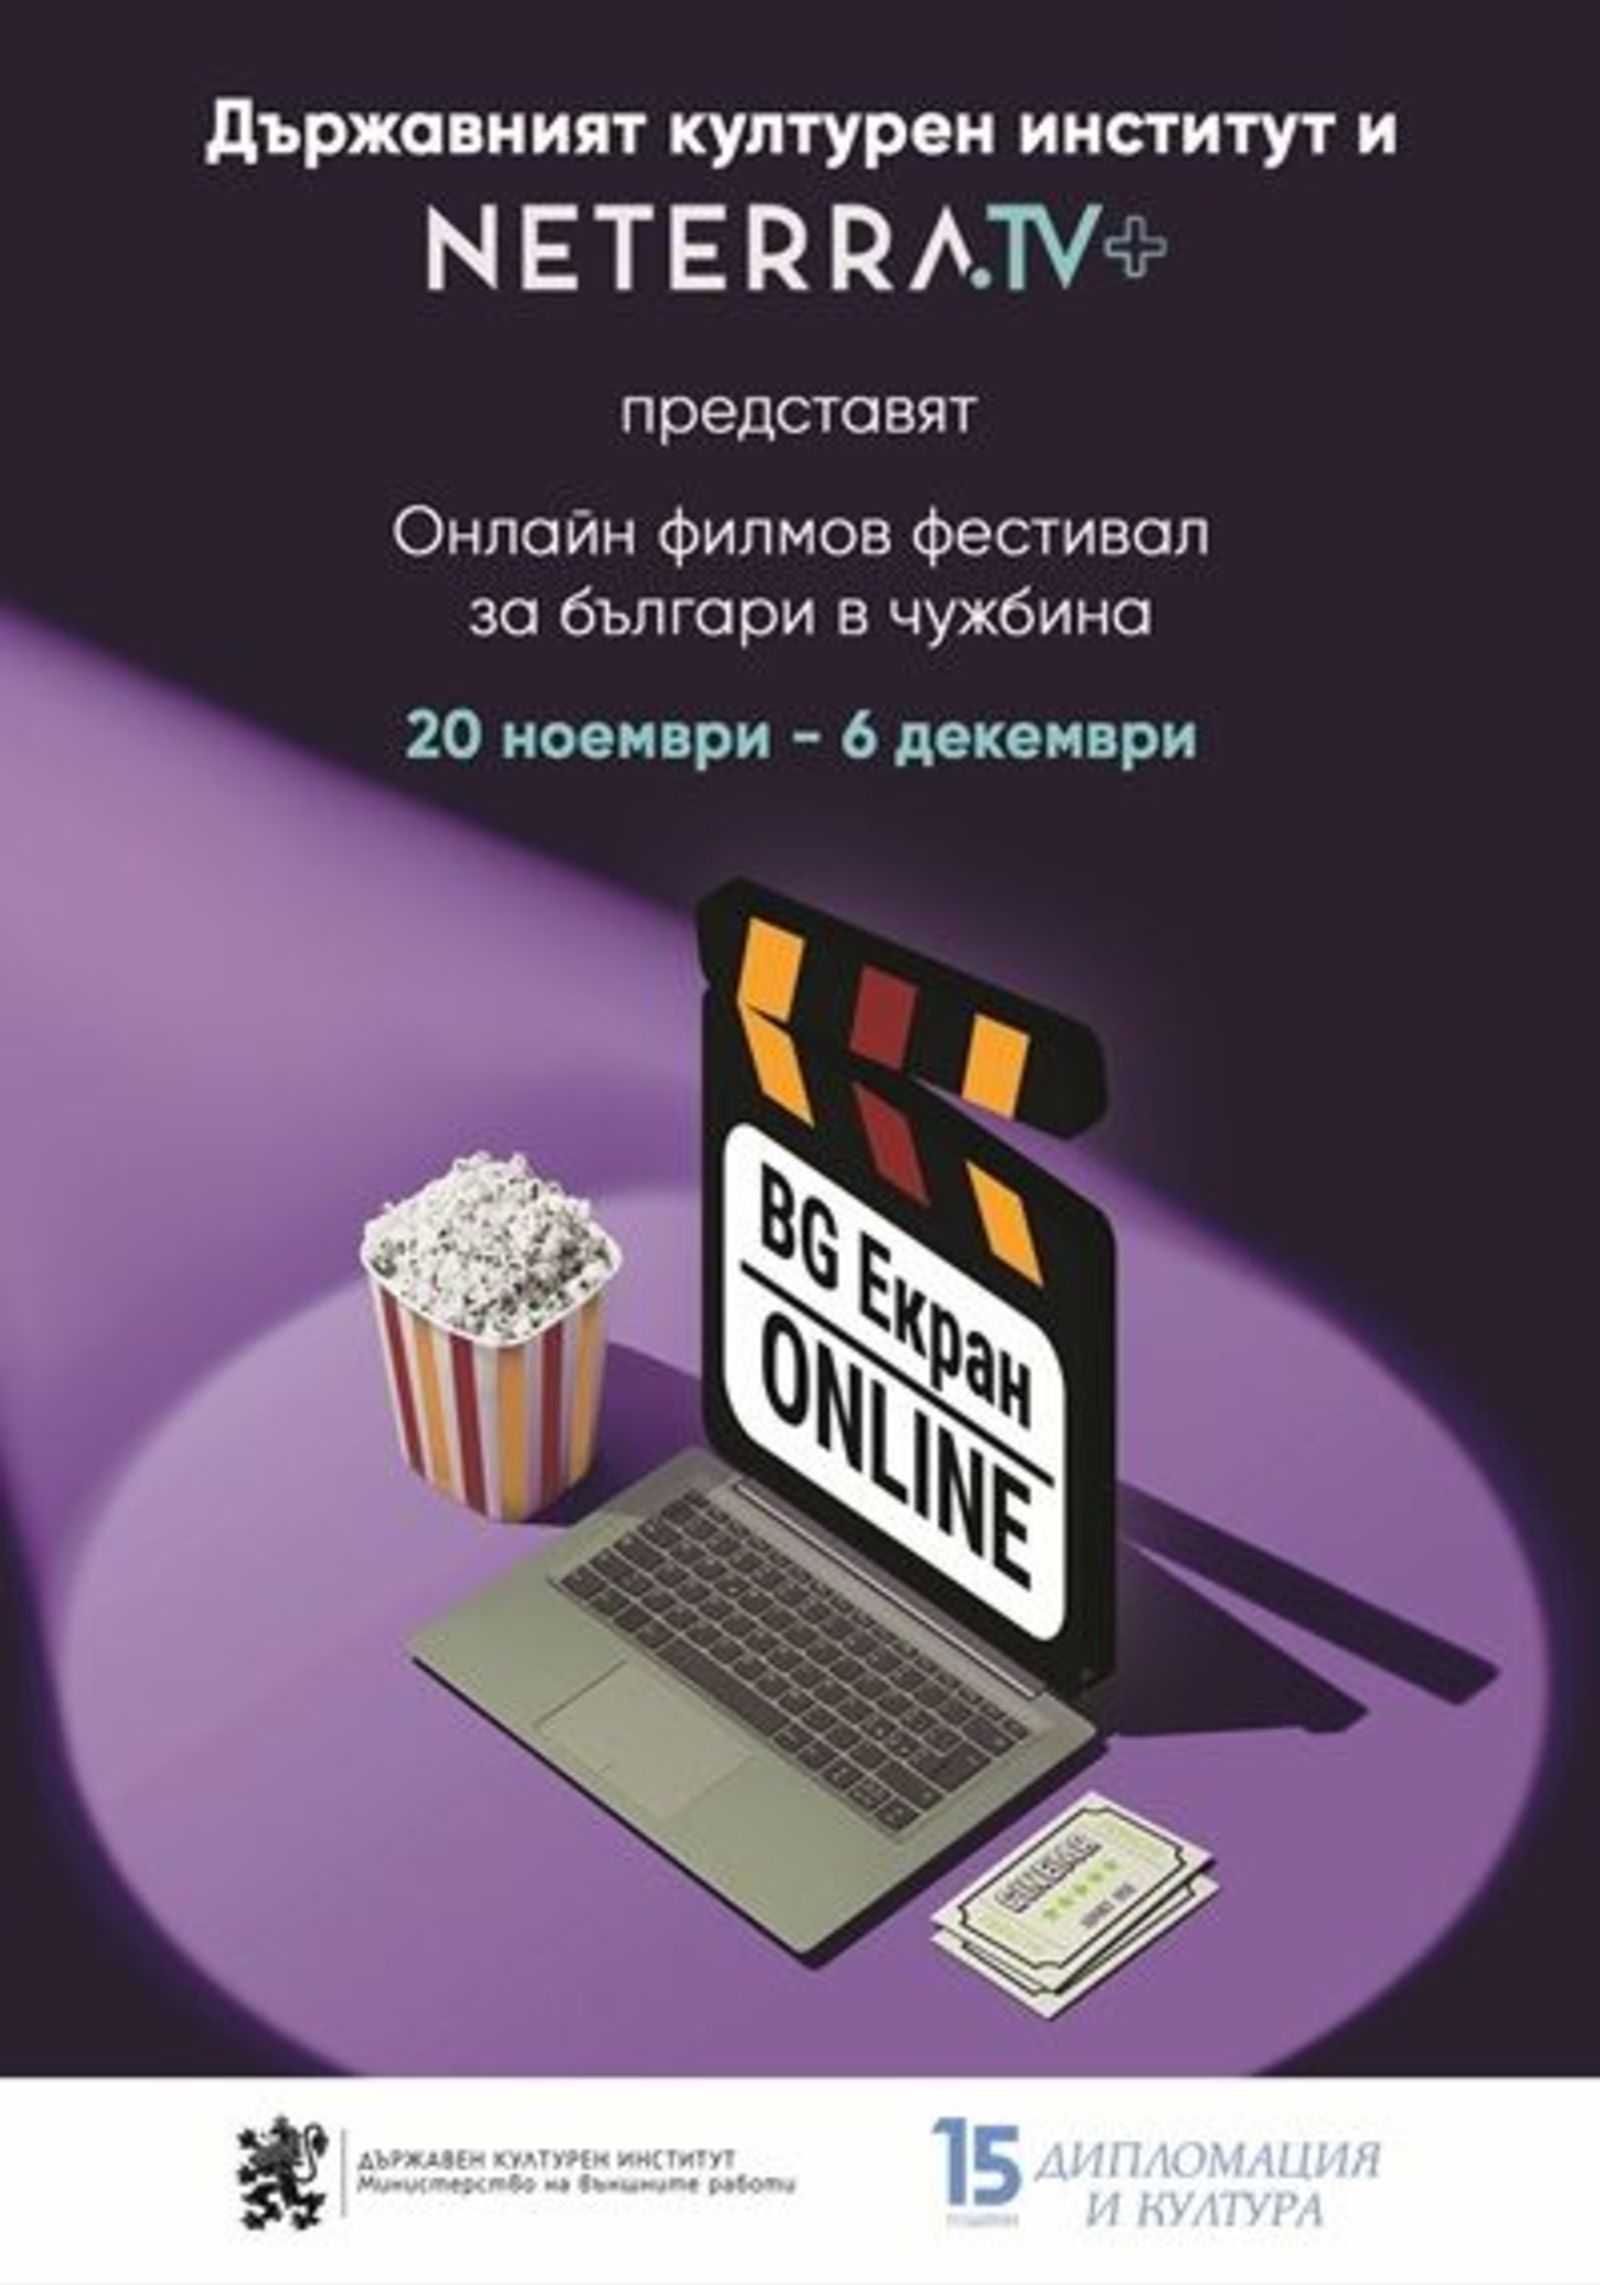 „БГ ЕКРАН ОНЛАЙН“ пренася българското кино зад граница